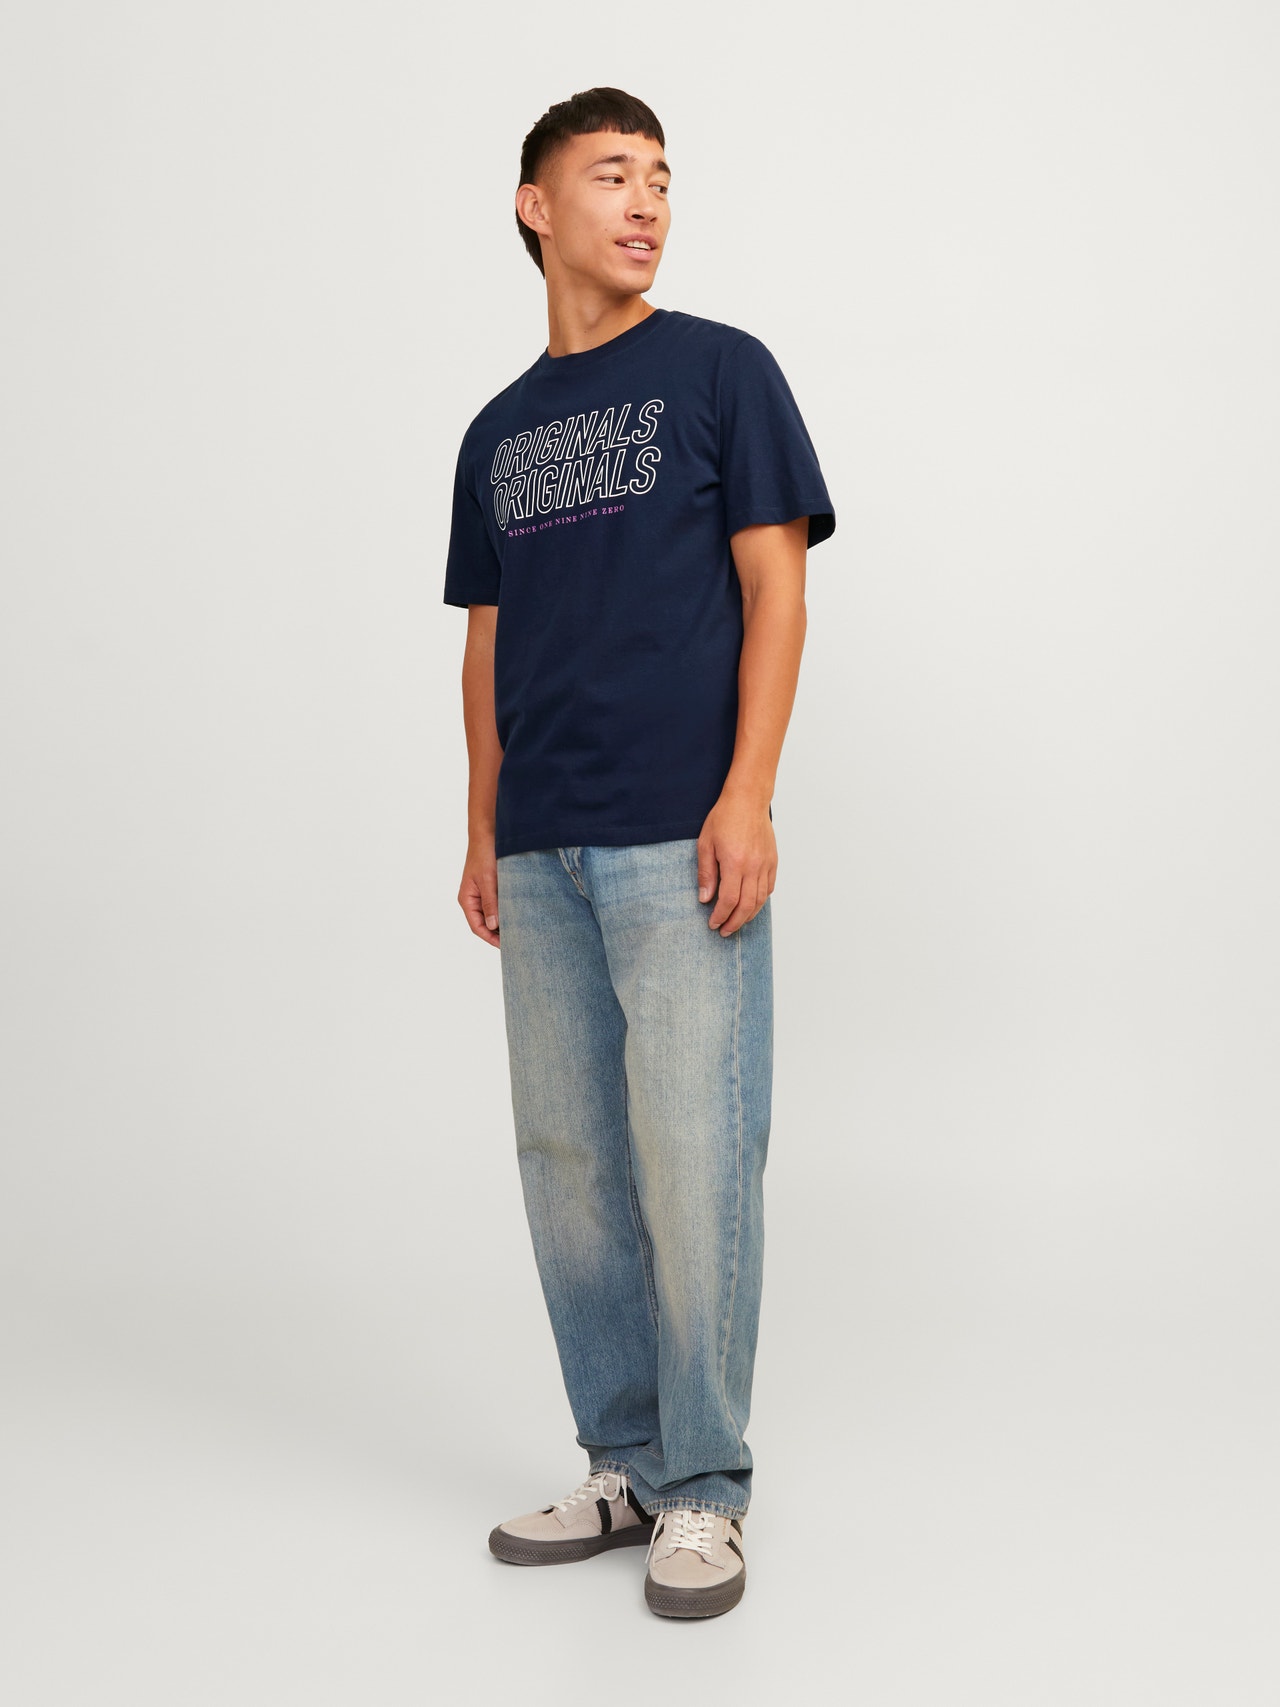 Jack & Jones Gedruckt Rundhals T-shirt -Navy Blazer - 12255078